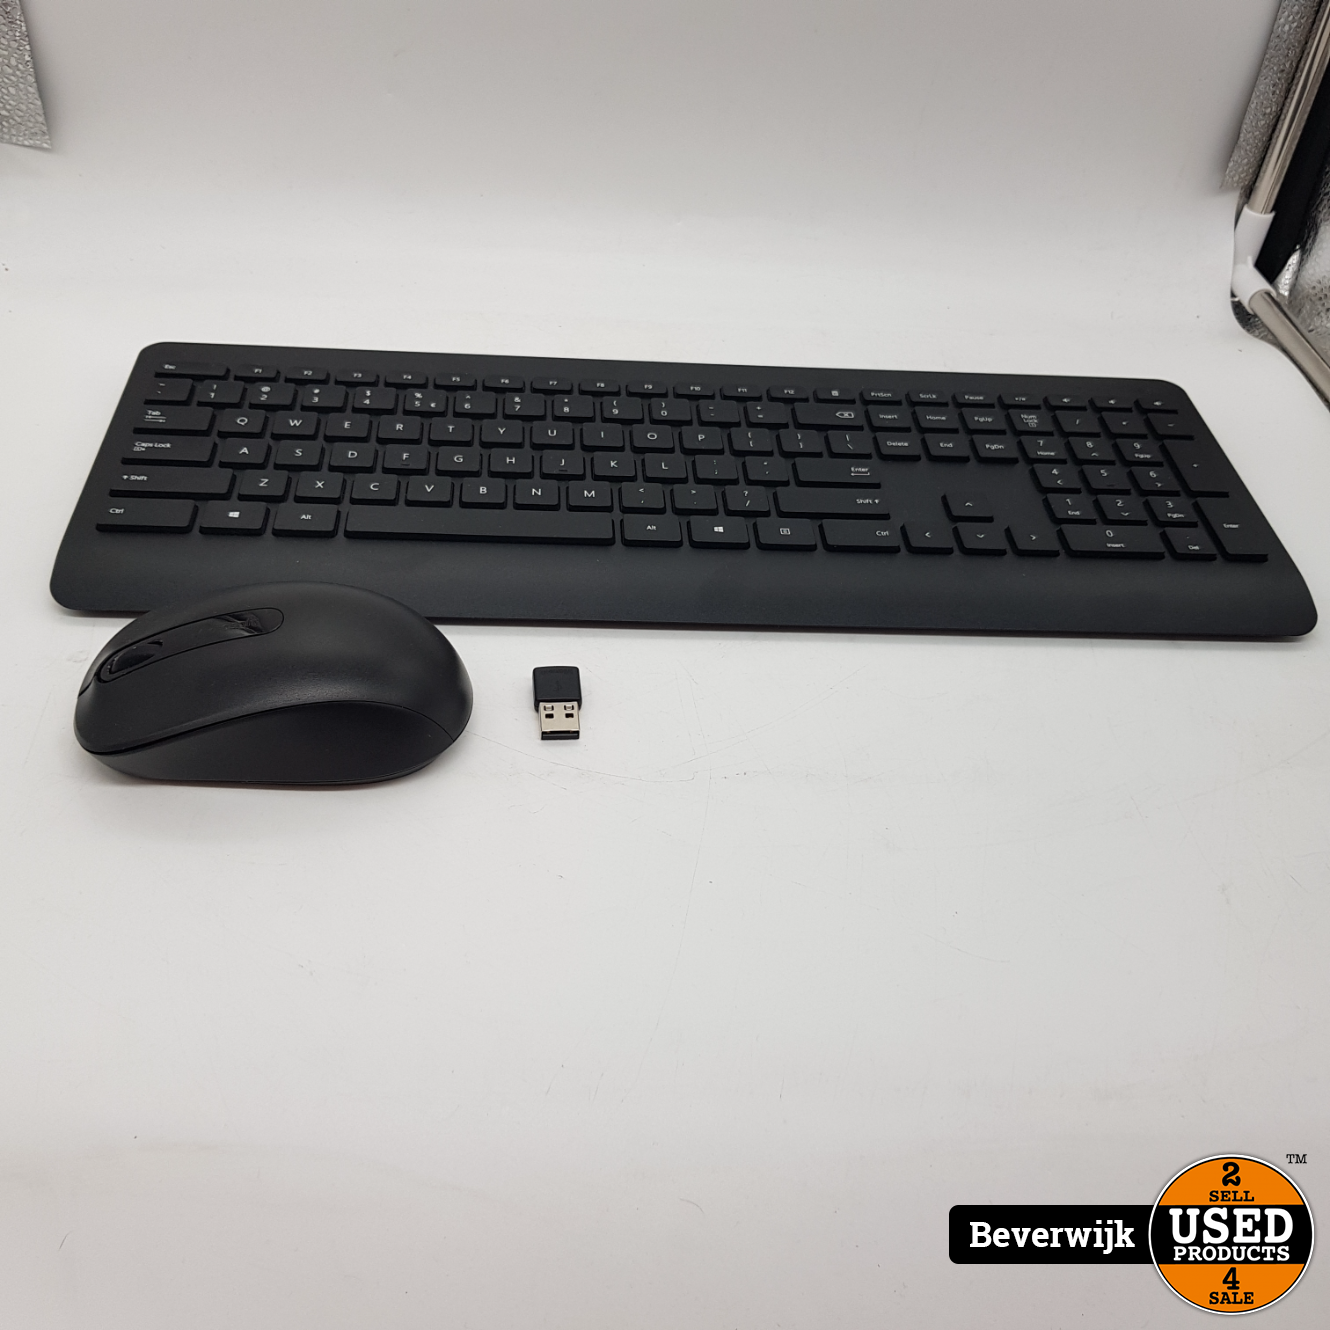 Microsoft Draadloos toetsenbord met muis - In Nette - Used Products